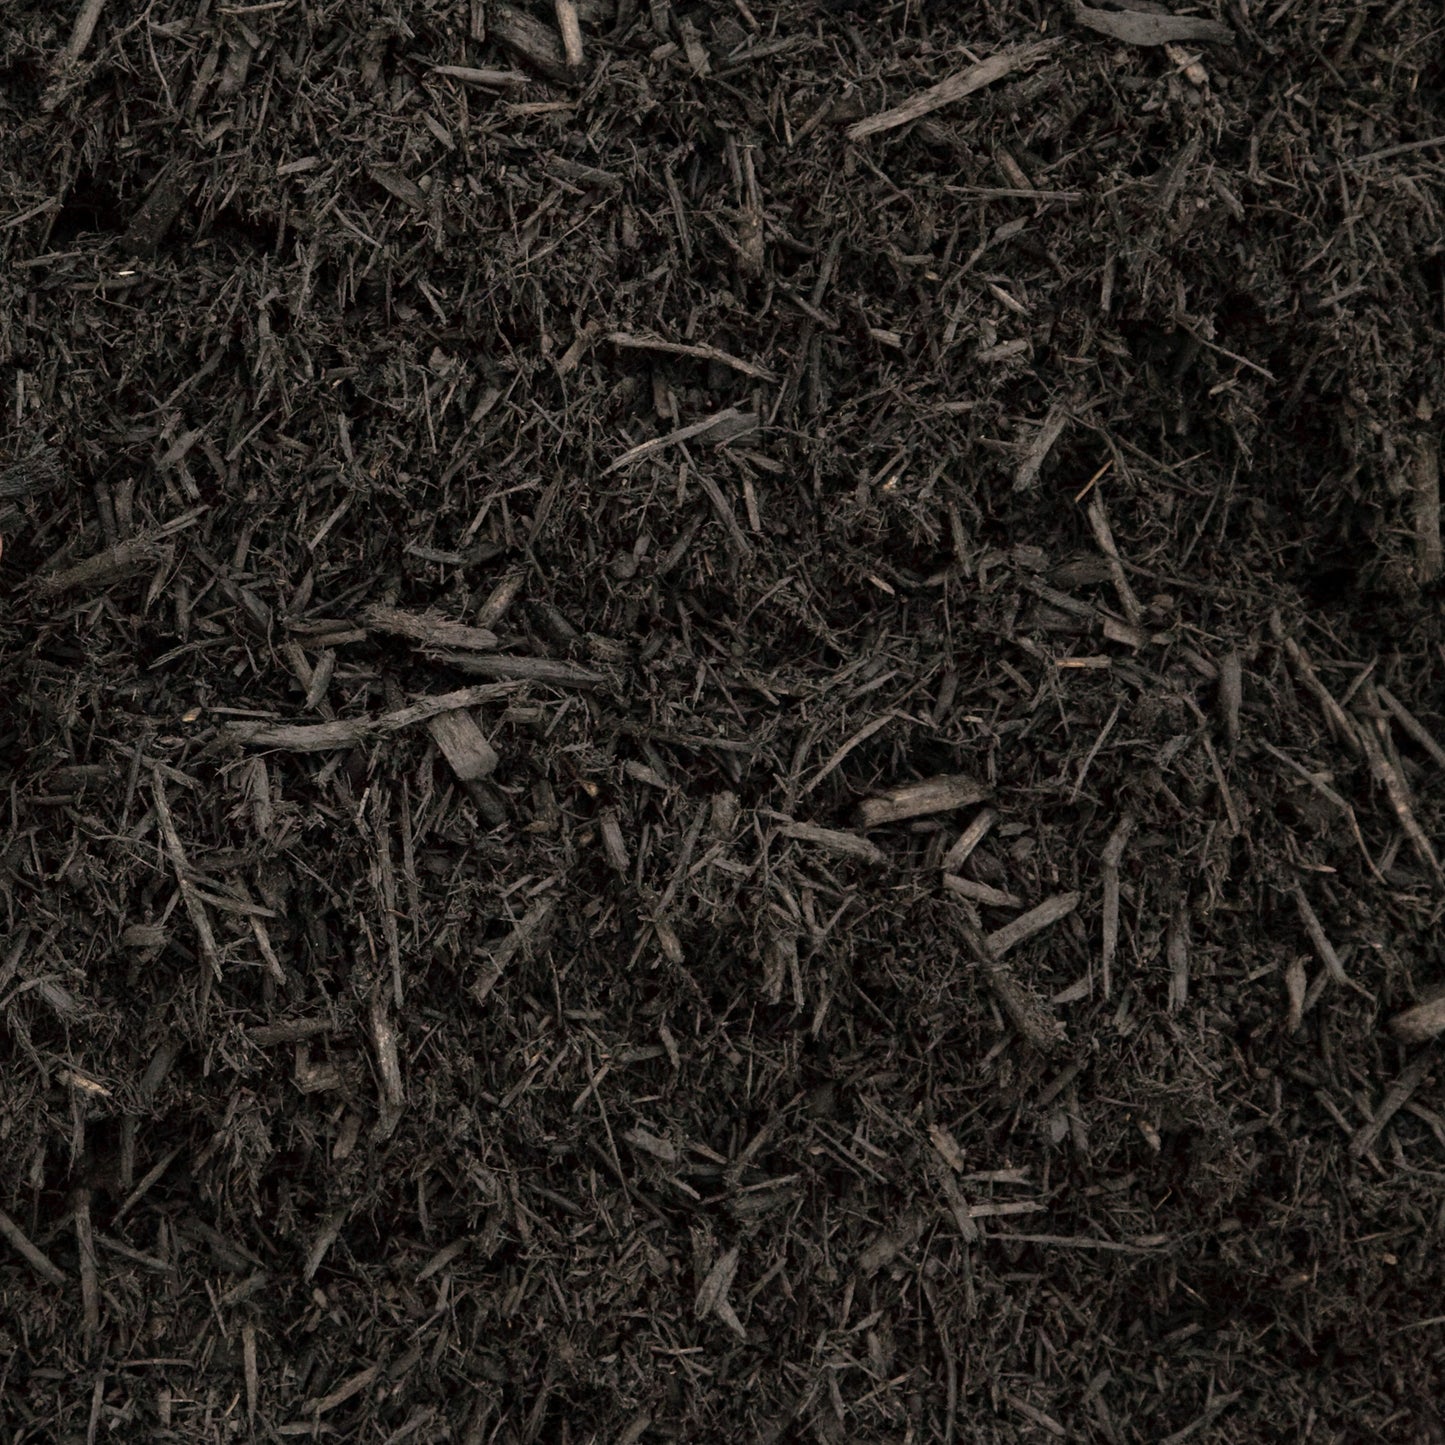 Dyed Black Shredded Hardwood (Bulk)